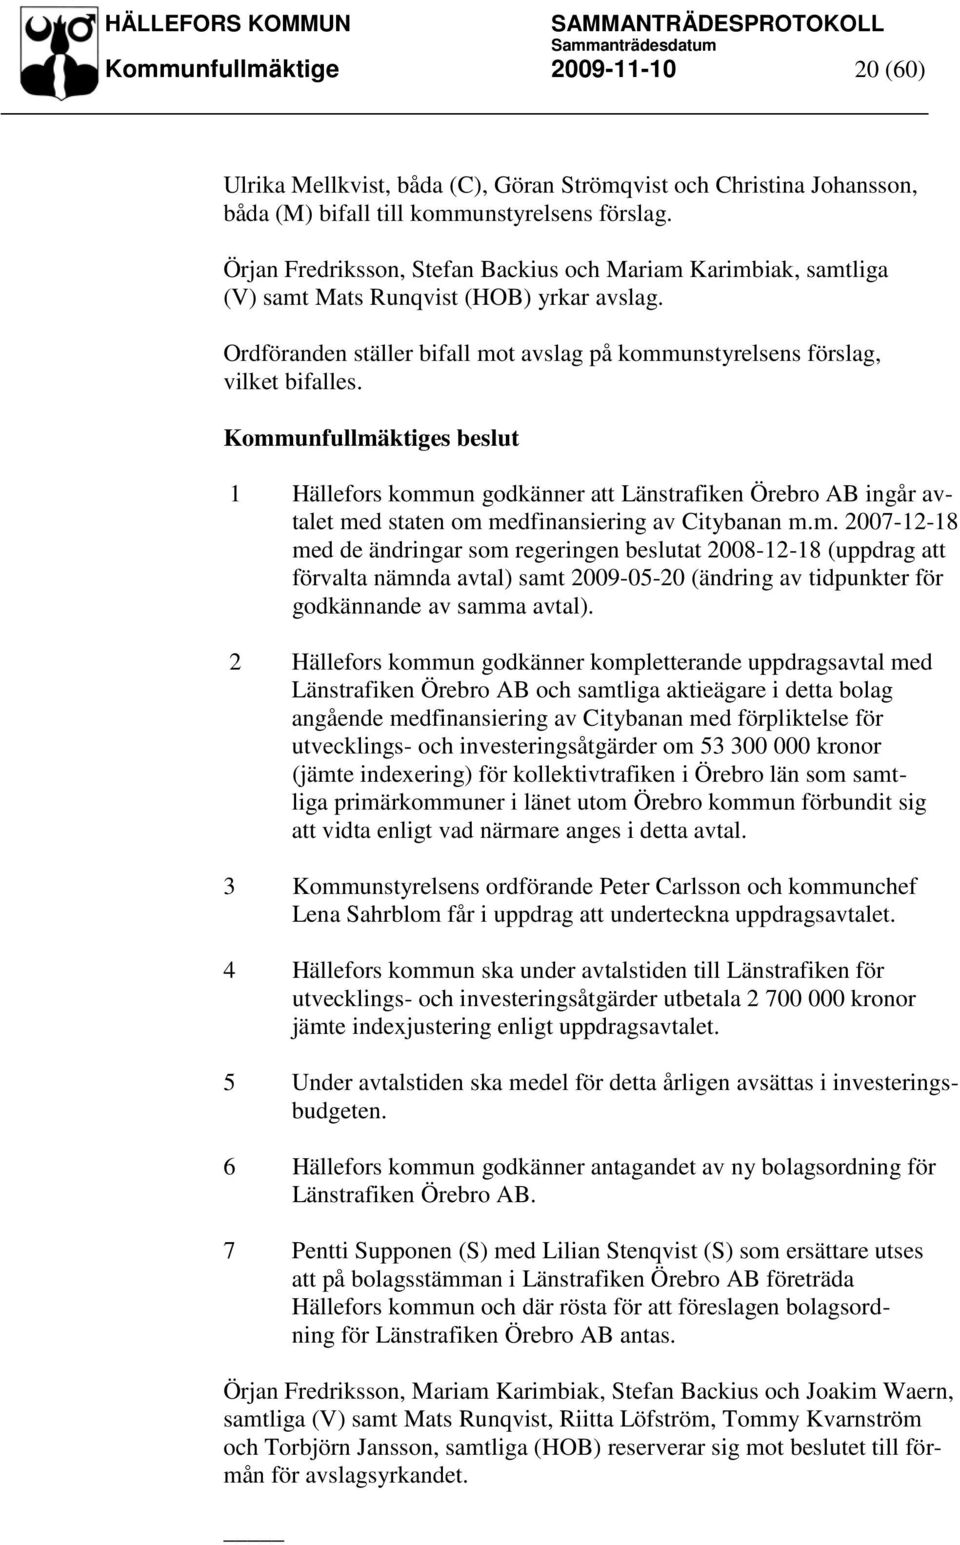 1 Hällefors kommun godkänner att Länstrafiken Örebro AB ingår avtalet med staten om medfinansiering av Citybanan m.m. 2007-12-18 med de ändringar som regeringen beslutat 2008-12-18 (uppdrag att förvalta nämnda avtal) samt 2009-05-20 (ändring av tidpunkter för godkännande av samma avtal).